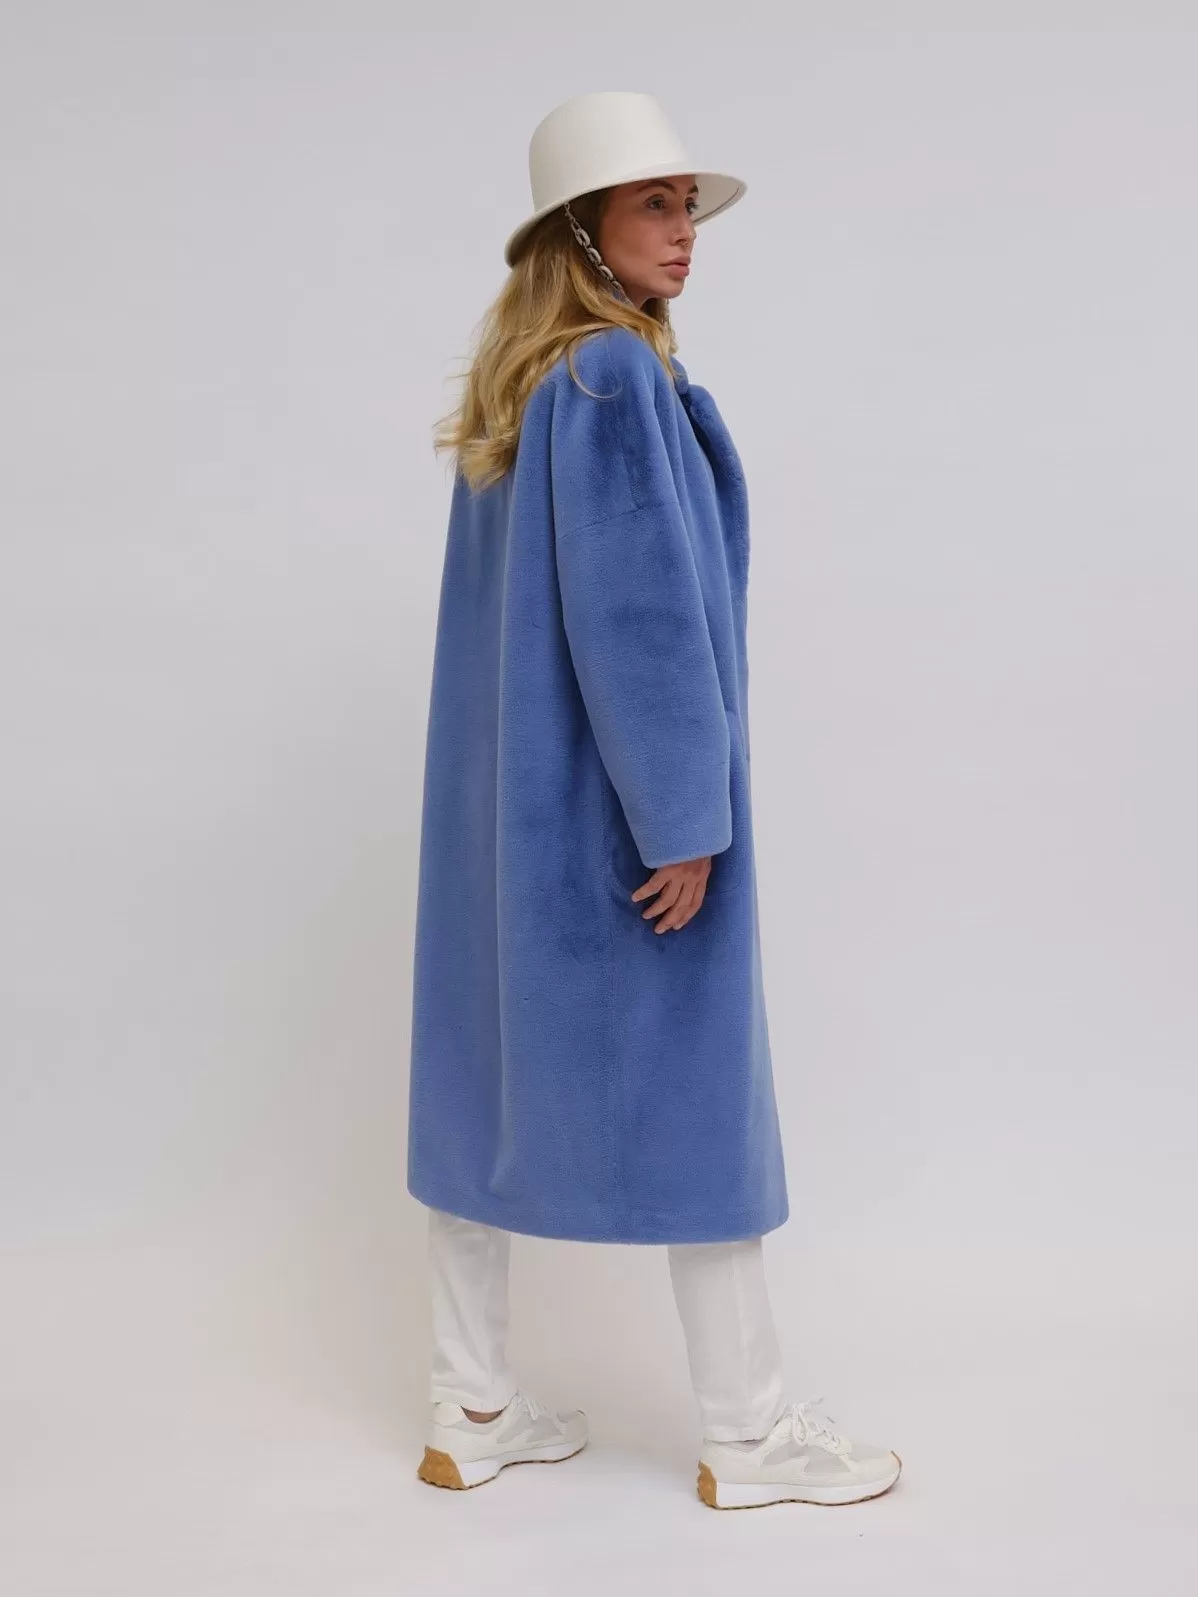 Как выбрать и купить эко-шубу: современная находка для женского зимнего гардероба